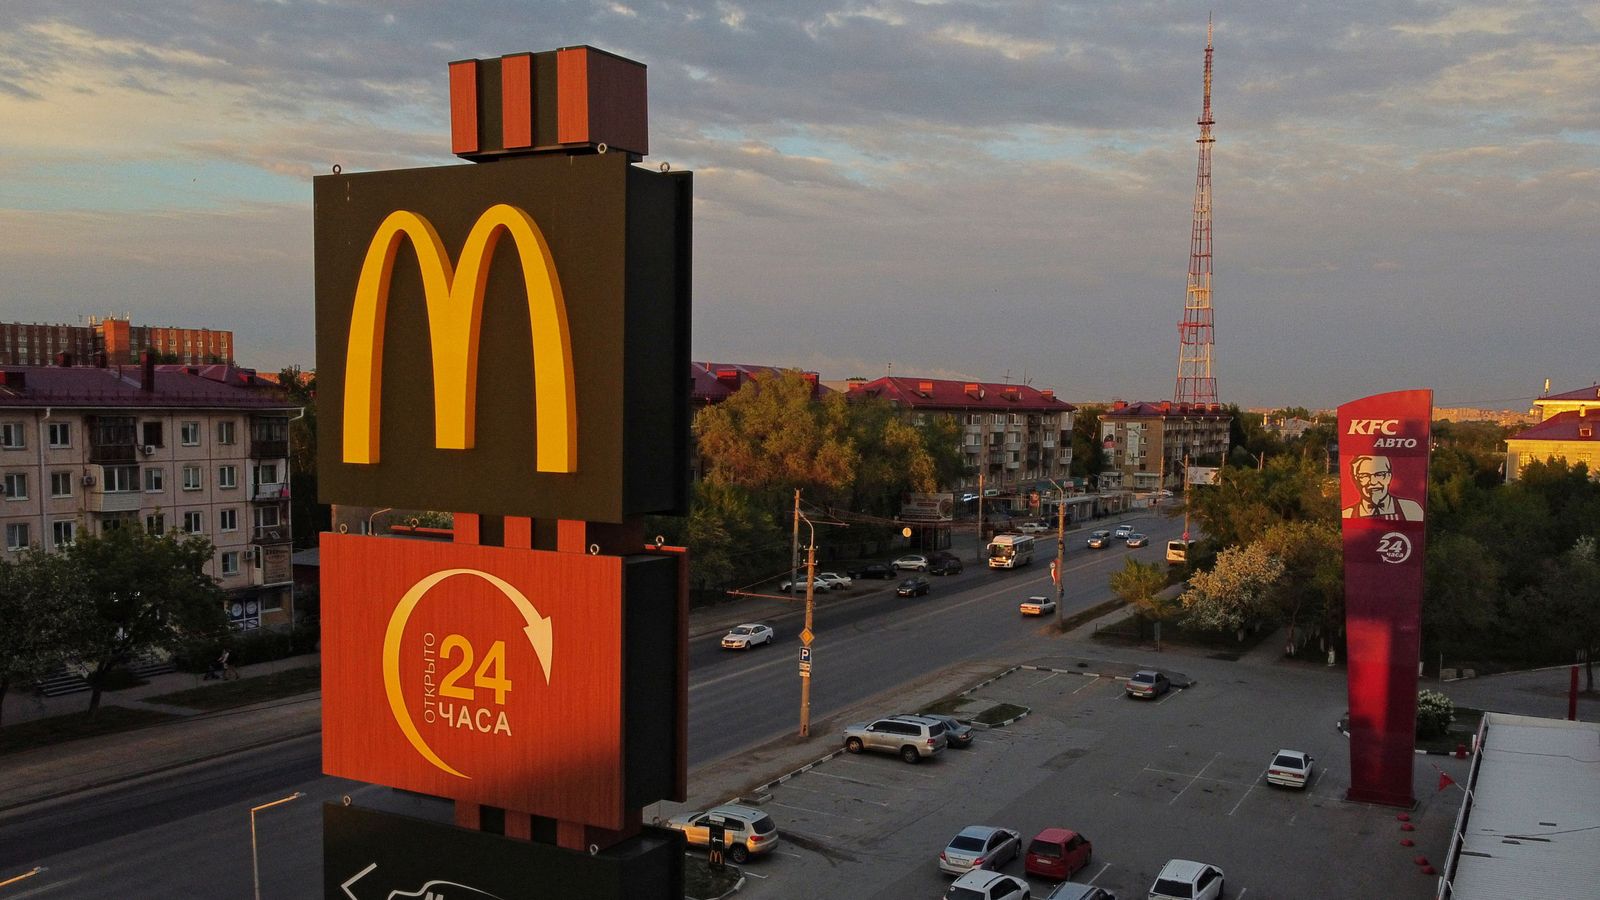 Les restaurants McDonald’s en Russie rouvriront sous un nouveau nom après la découverte d’un acheteur |  Actualité économique